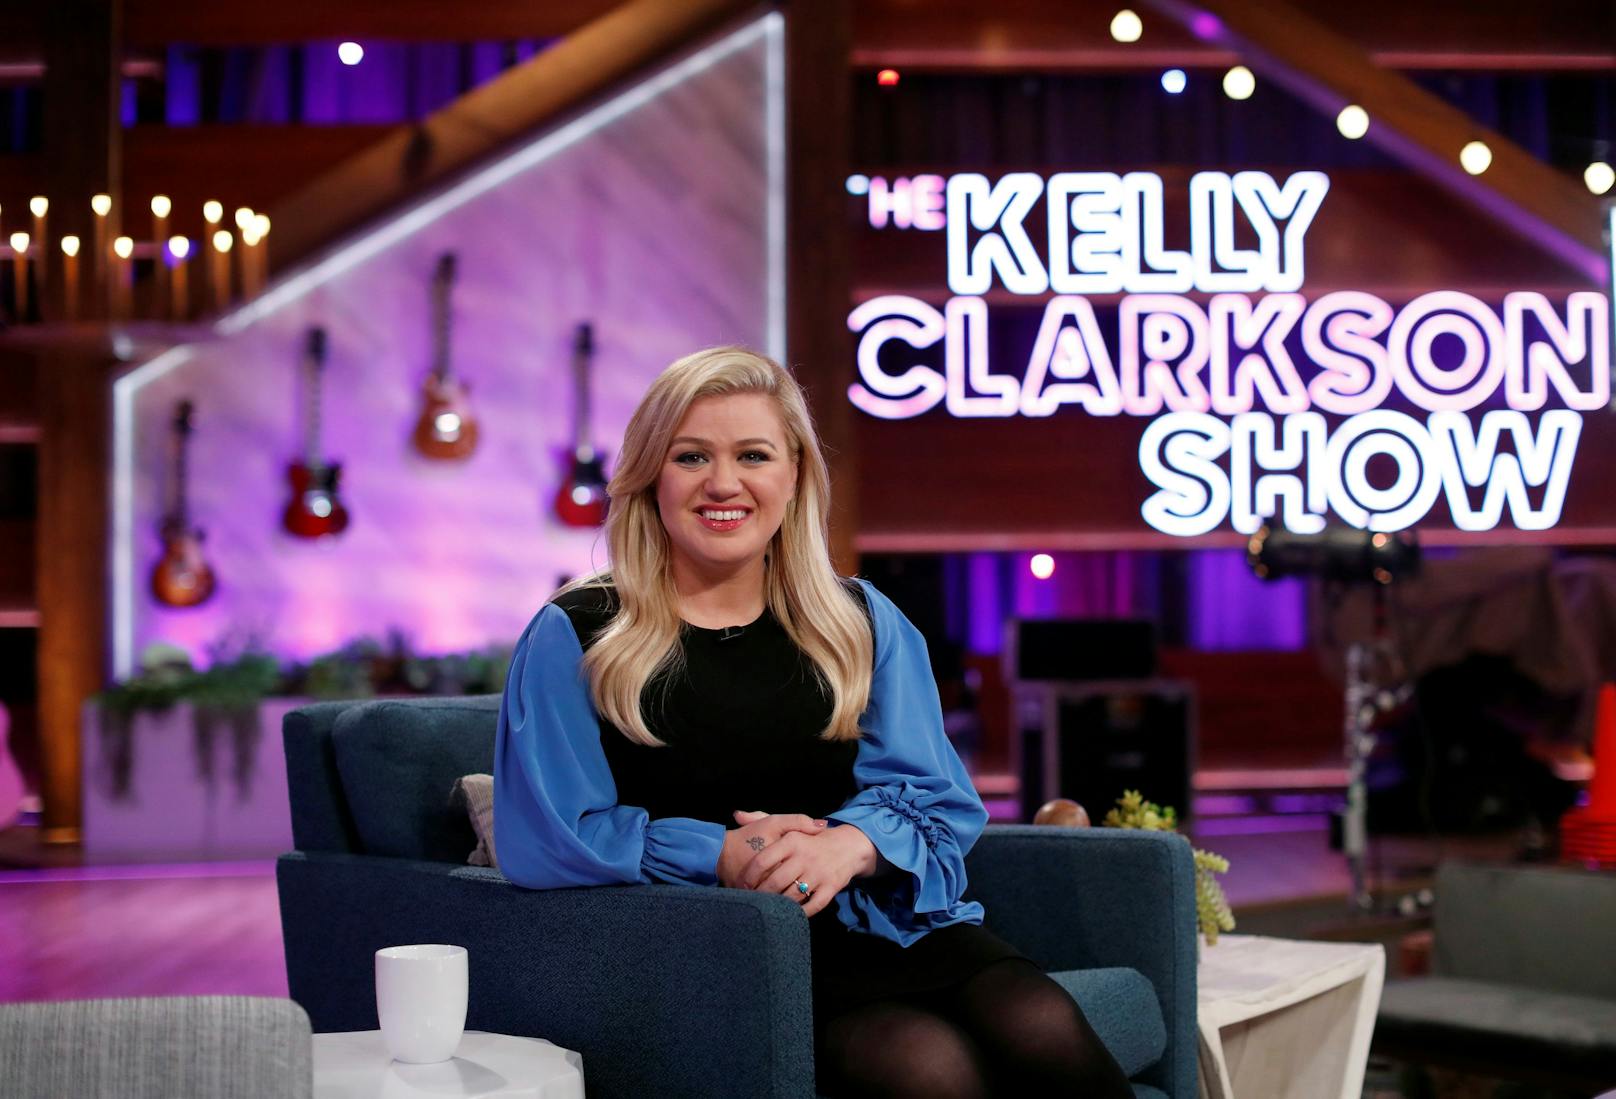 Mittlerweile macht Kelly Clarkson nicht nur Musik, sondern ist auch erfolgreich mit ihrer eigenen Talk-Sendung "The Kelly Clarkson Show" im US-Fernsehen unterwegs.